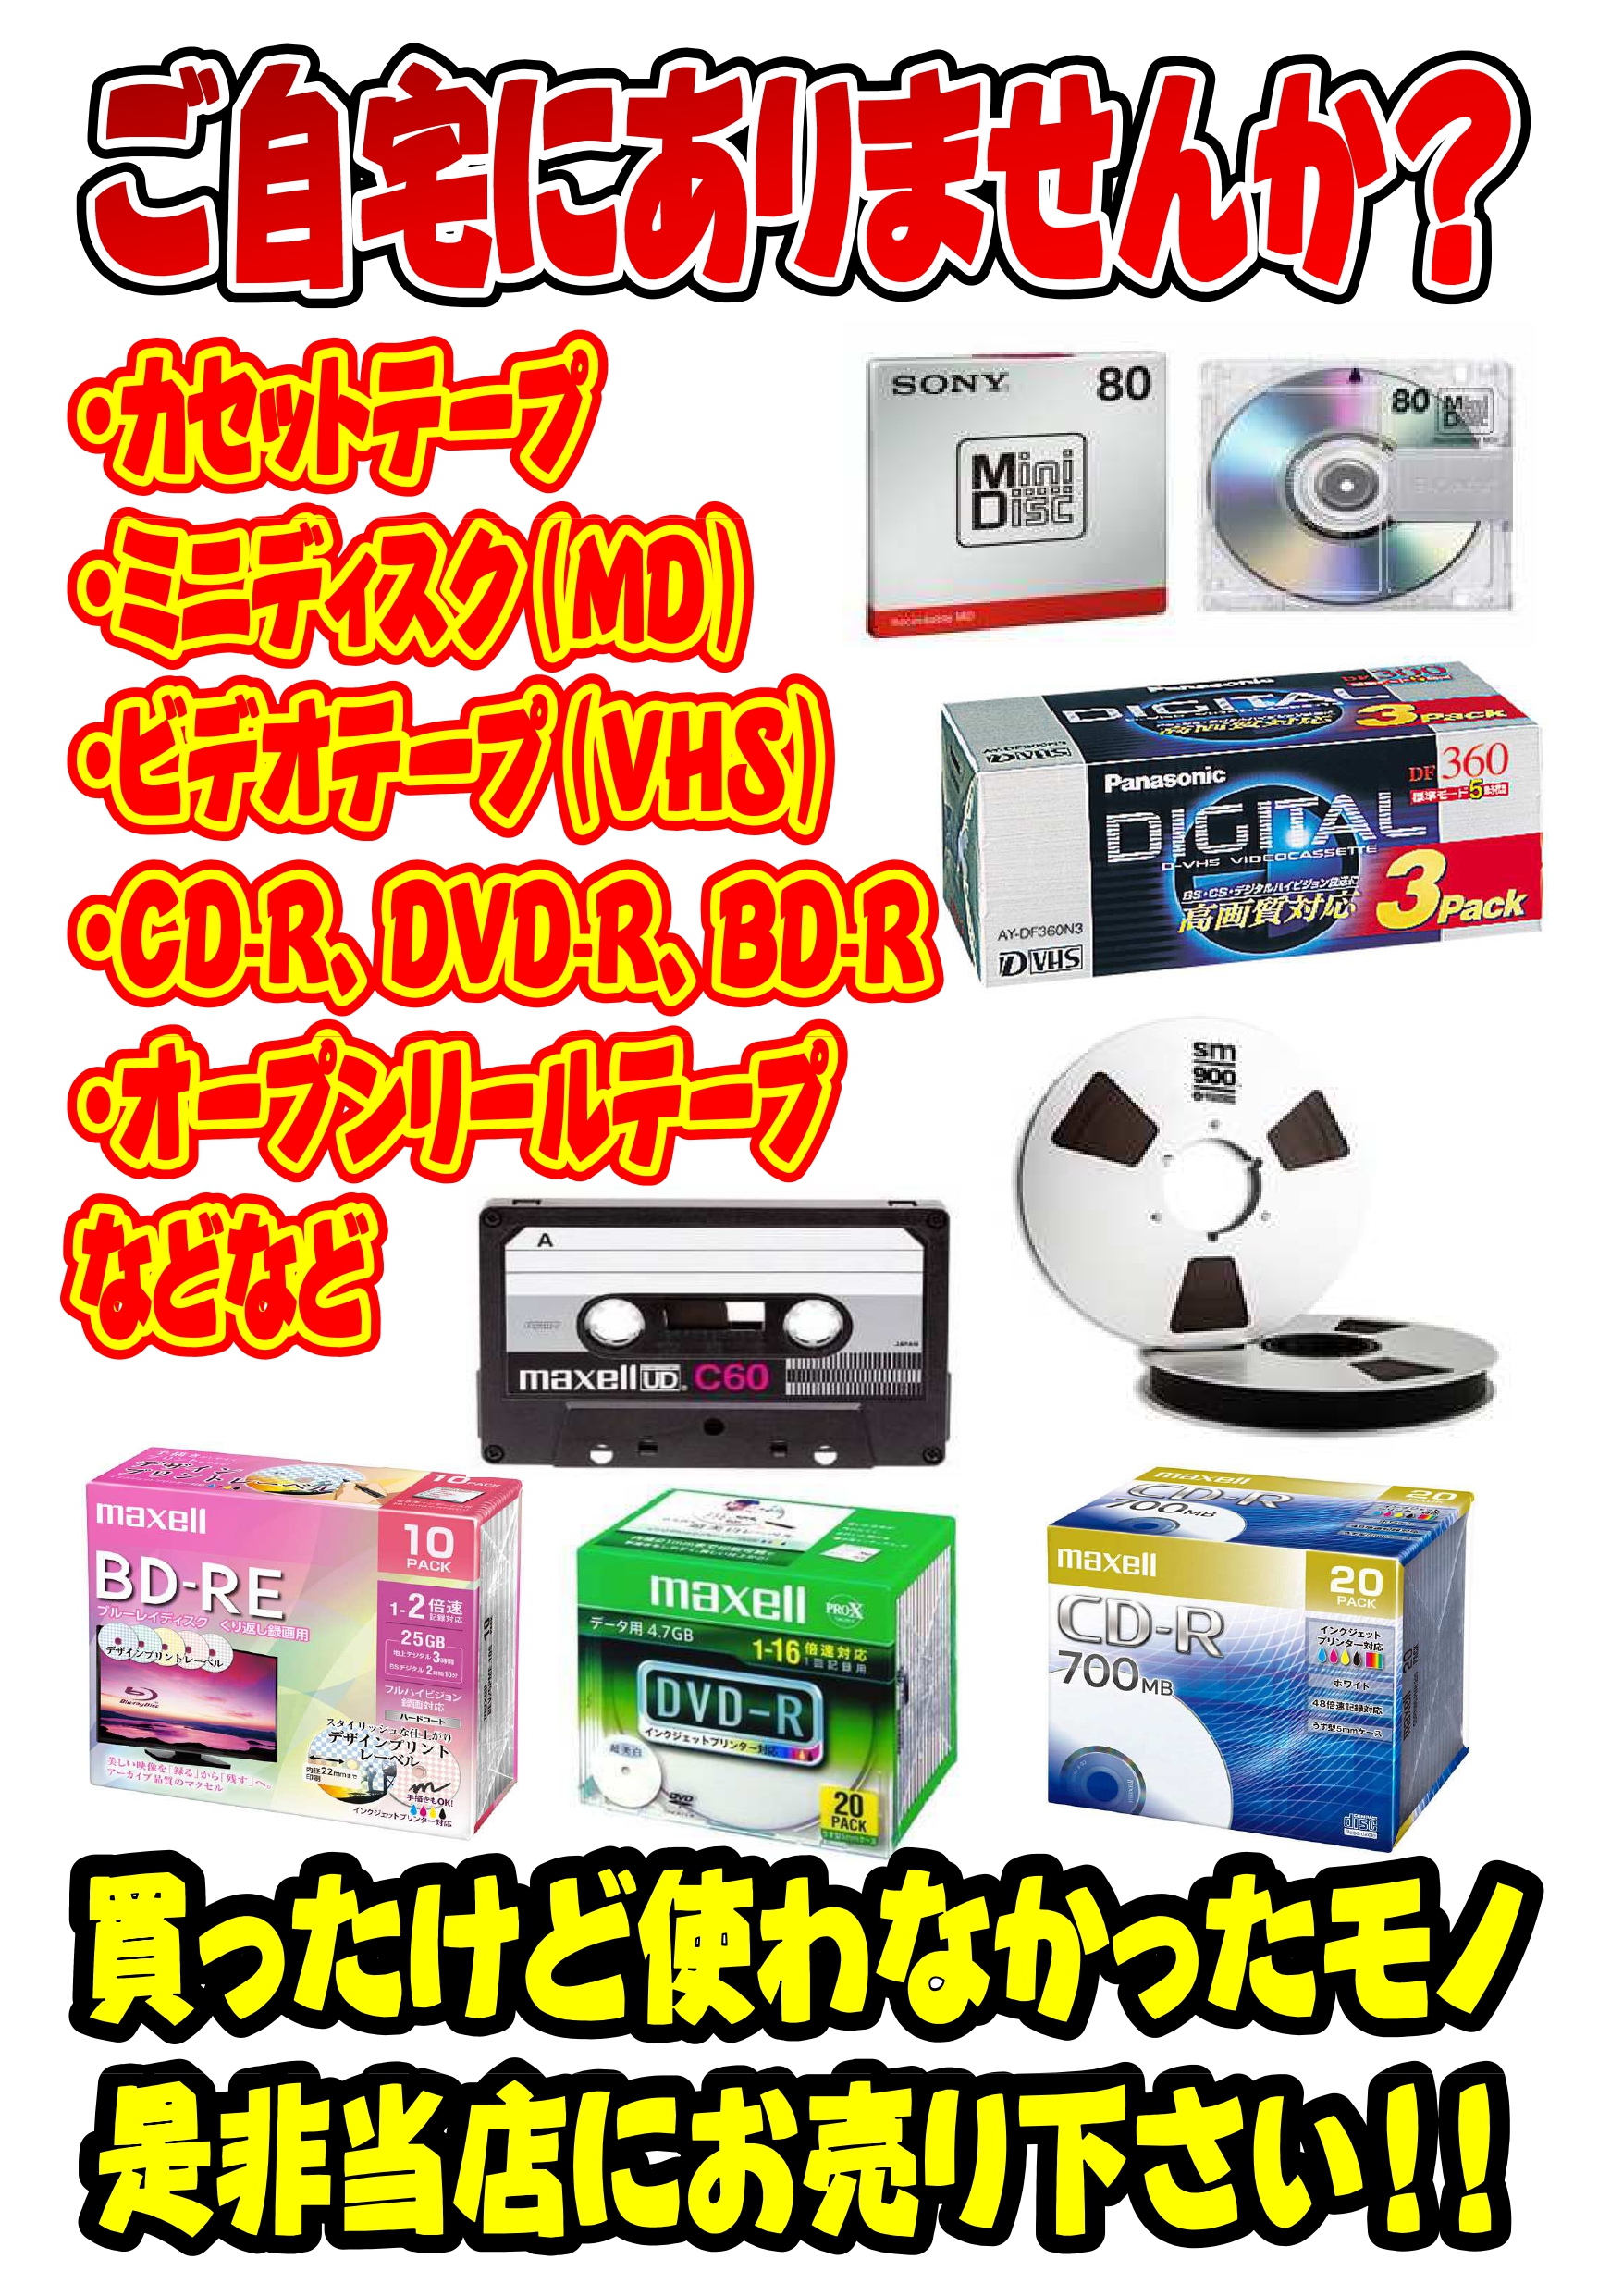 8 23 カセットテープ ビデオテープ Mdディスクなどなど買取いたし